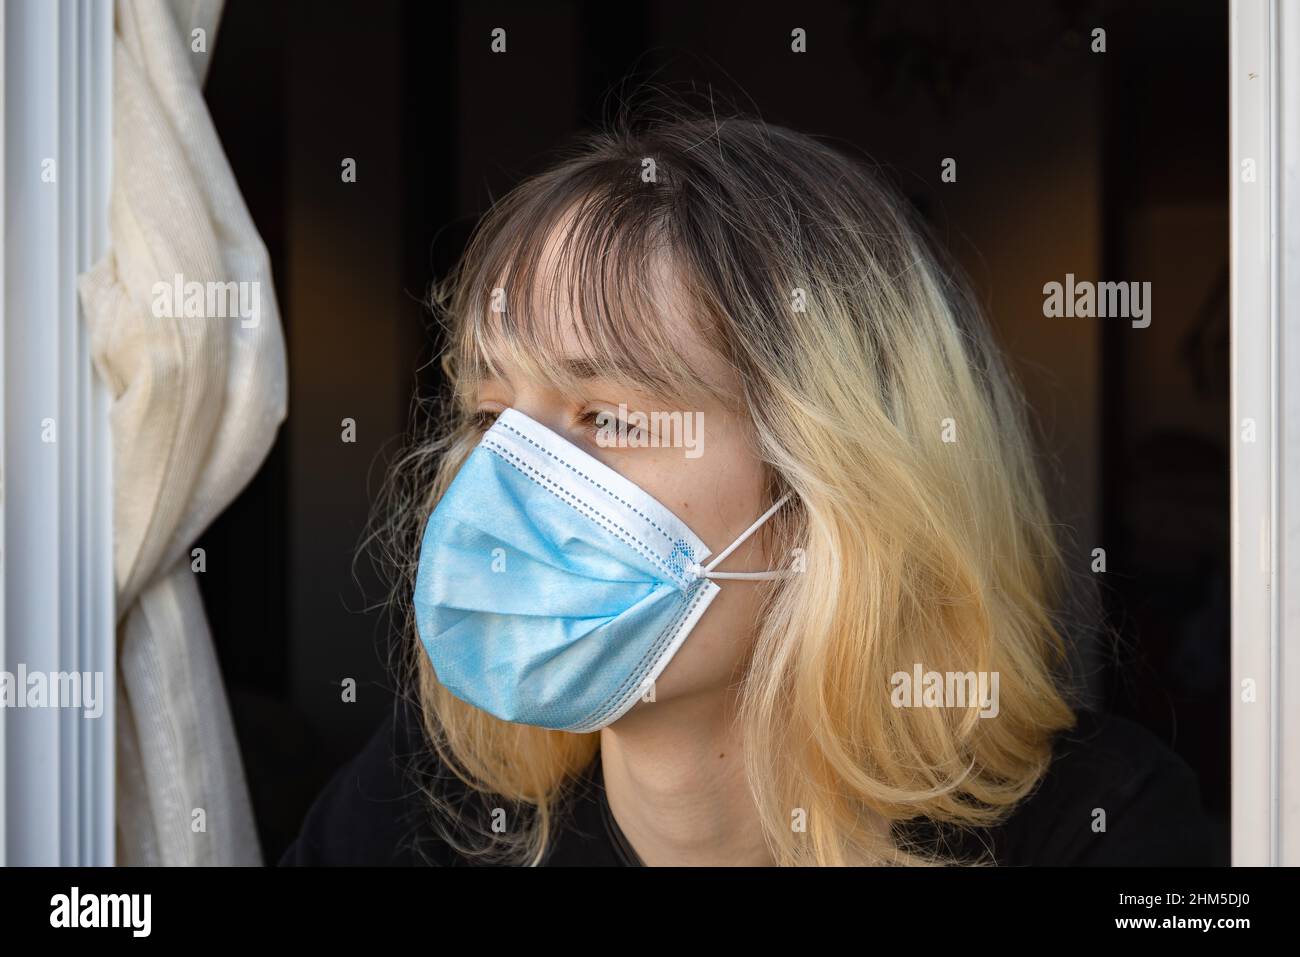 Eine junge Frau, die durch das Coronavirus Covid-19 isoliert wurde, blickt mit einer schützenden Gesichtsmaske durch das Fenster ihres Hauses Stockfoto